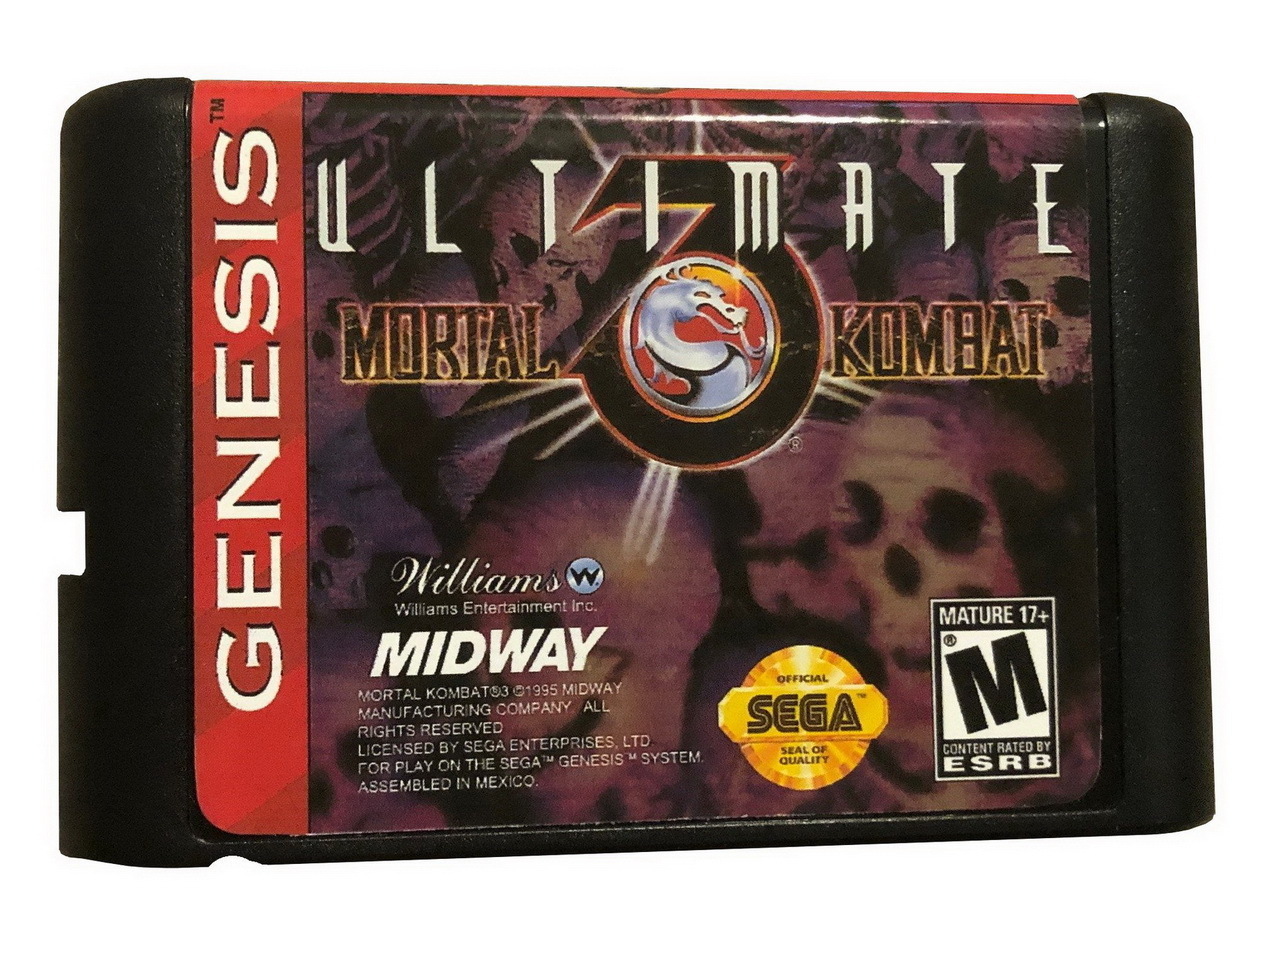 Сега 16 бит мортал комбат. Игровой картридж для Sega (16 bit) Mortal Kombat 3 Ultimate (dk3201). Игровая приставка сега с игрой мортол комба. MK 1 Sega. Картридж на сегу мортал комбат.